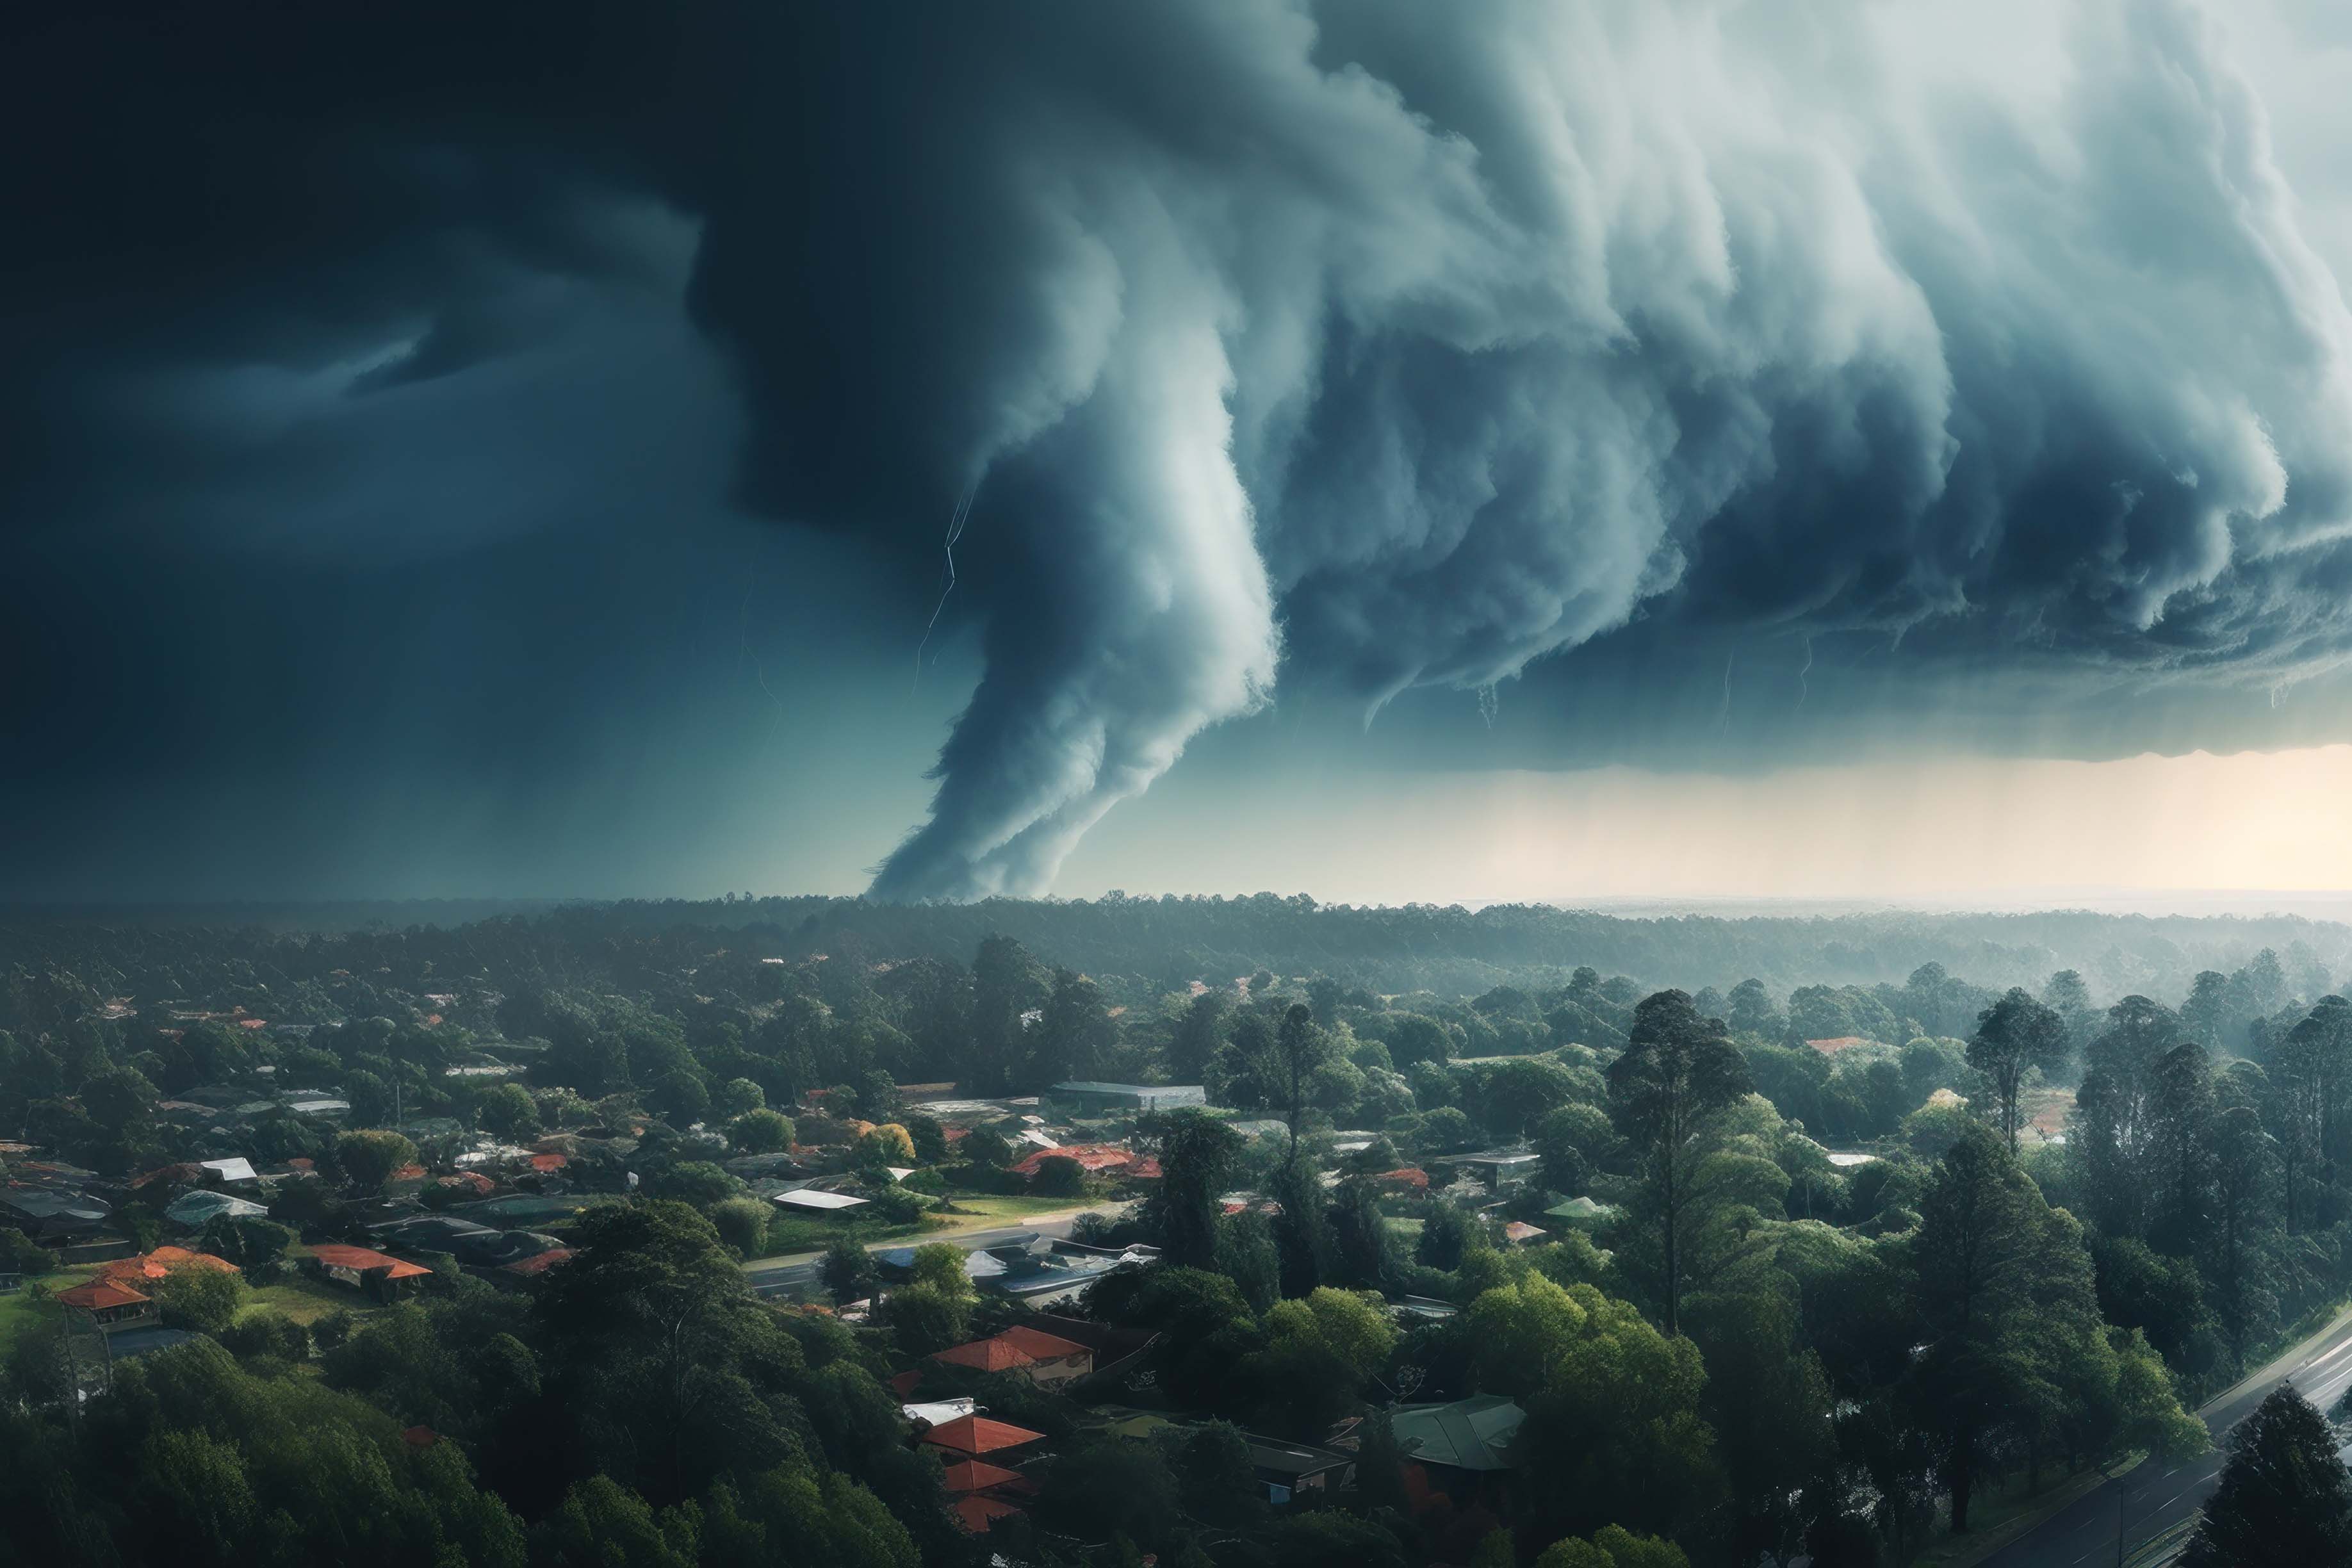 Le changement climatique : quels impacts sur les événements météorologiques extrêmes ?